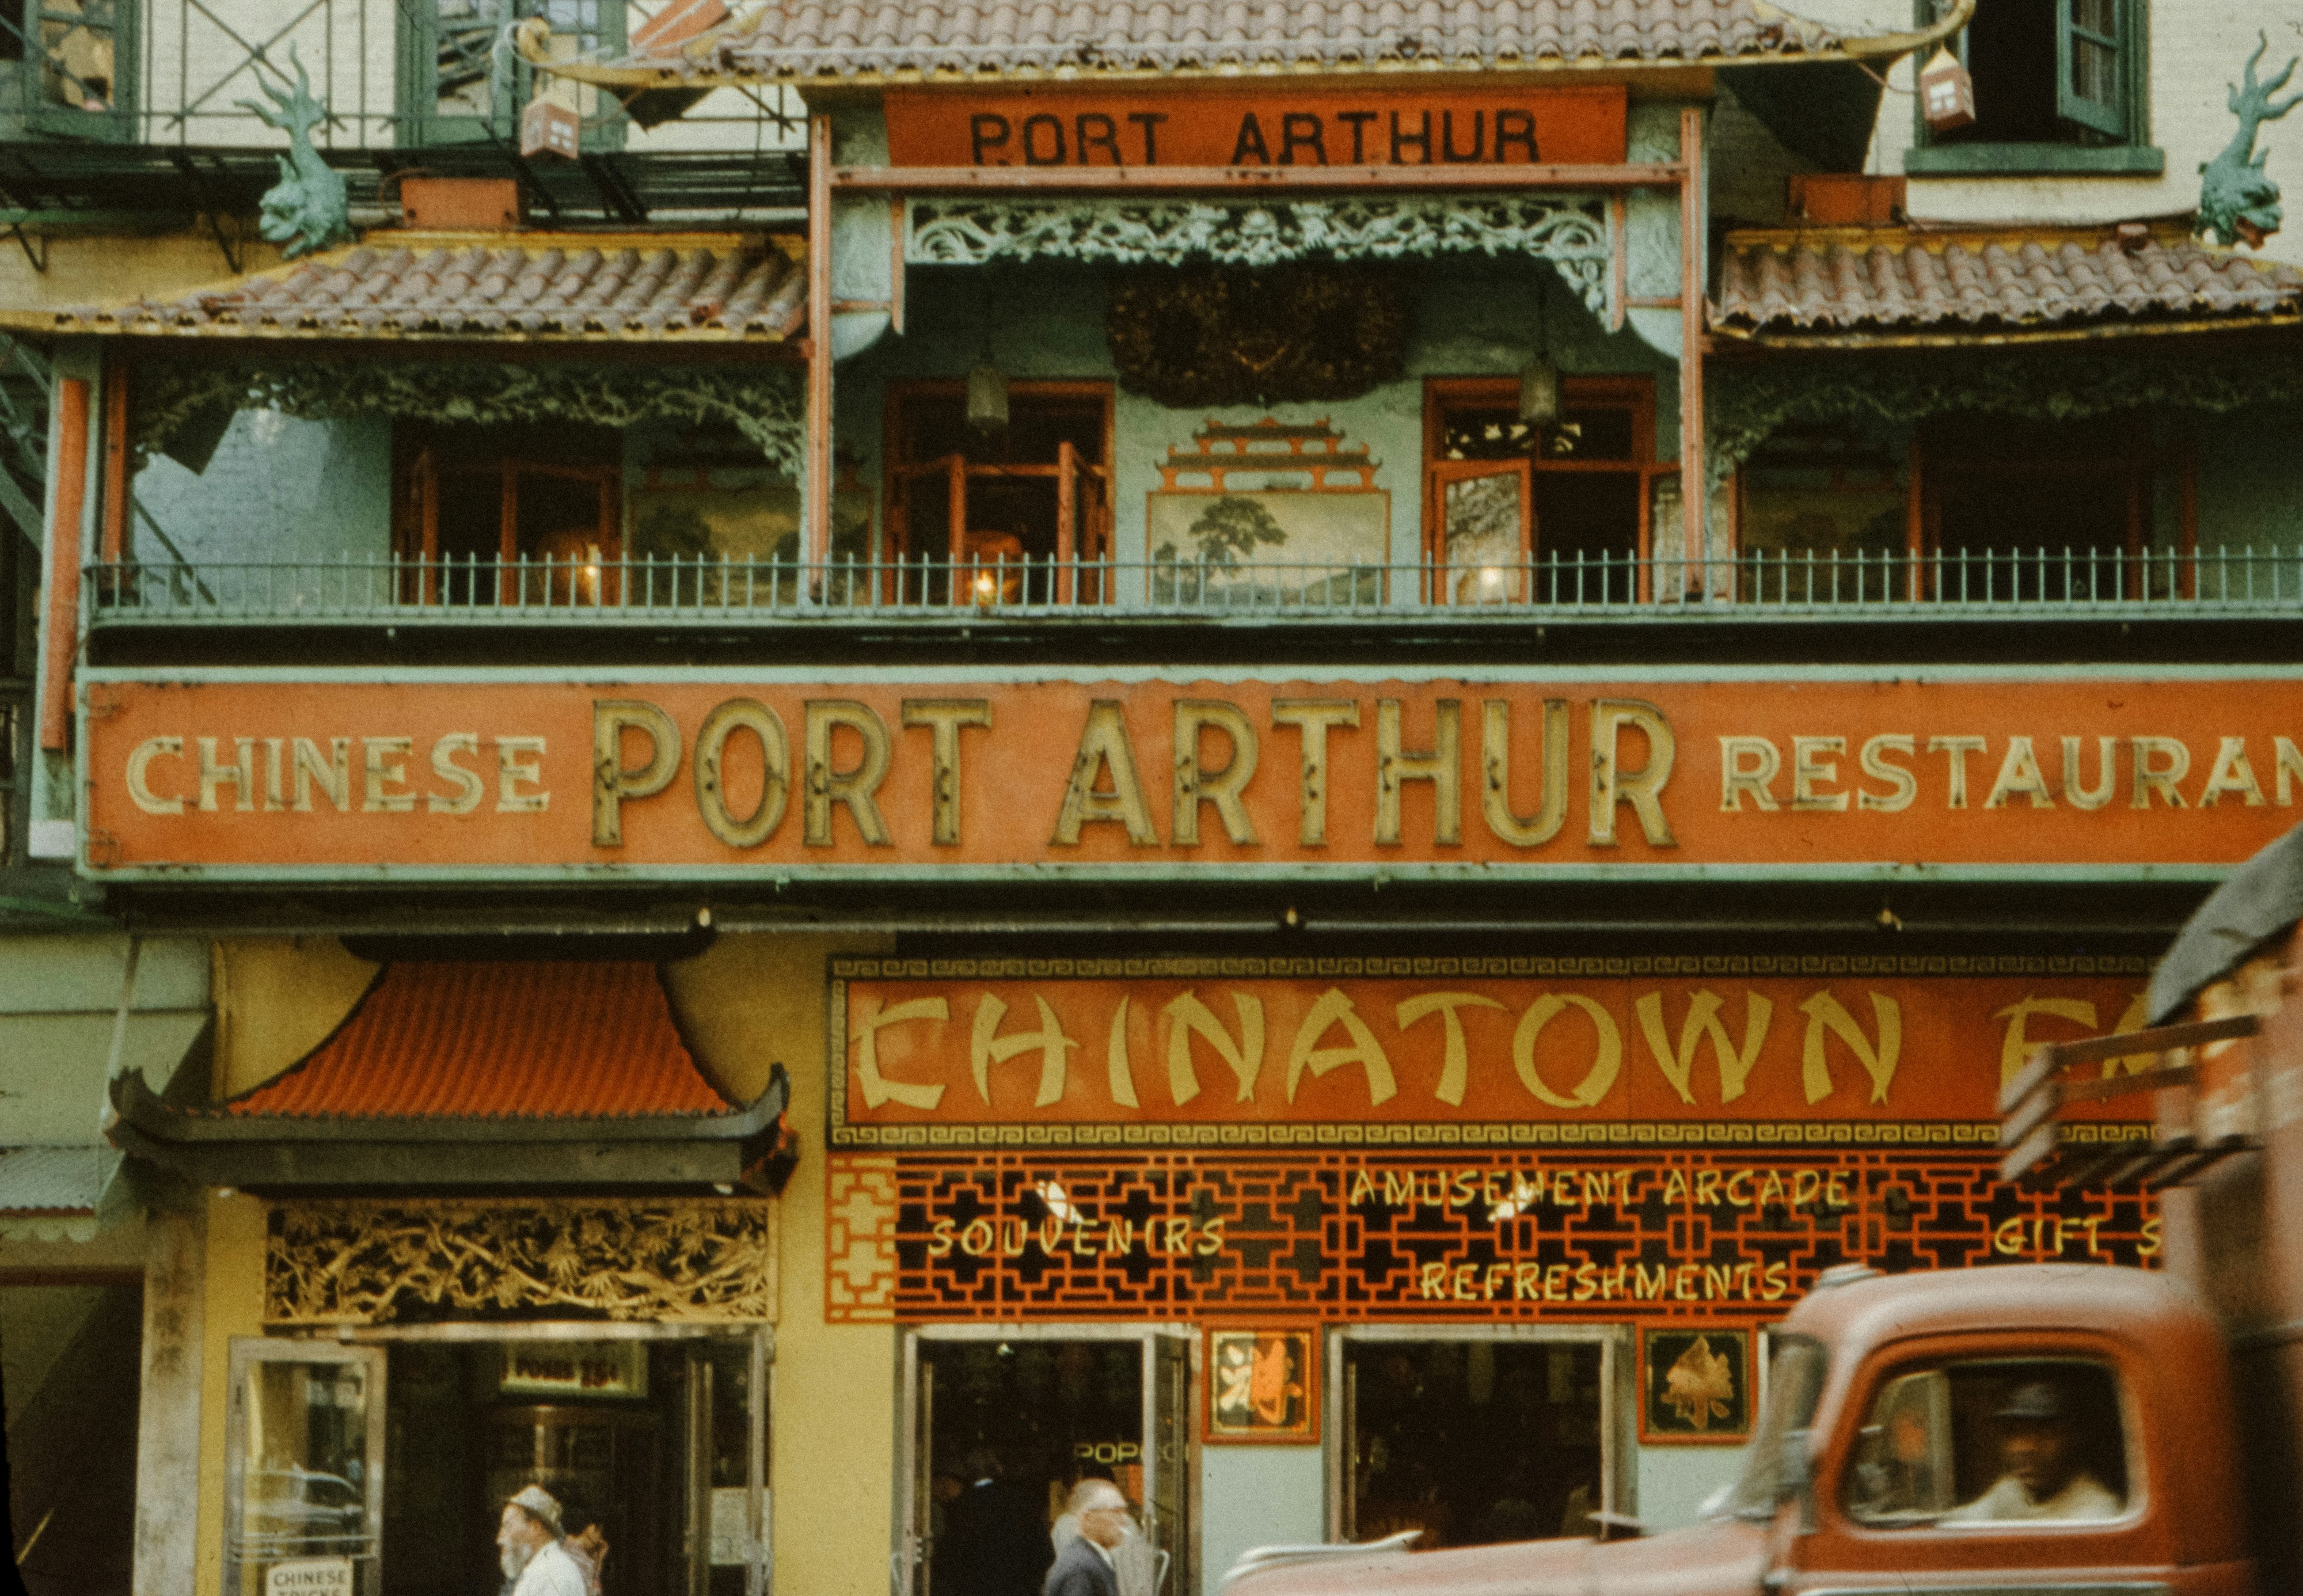 Chinese Port Arthur restaurant